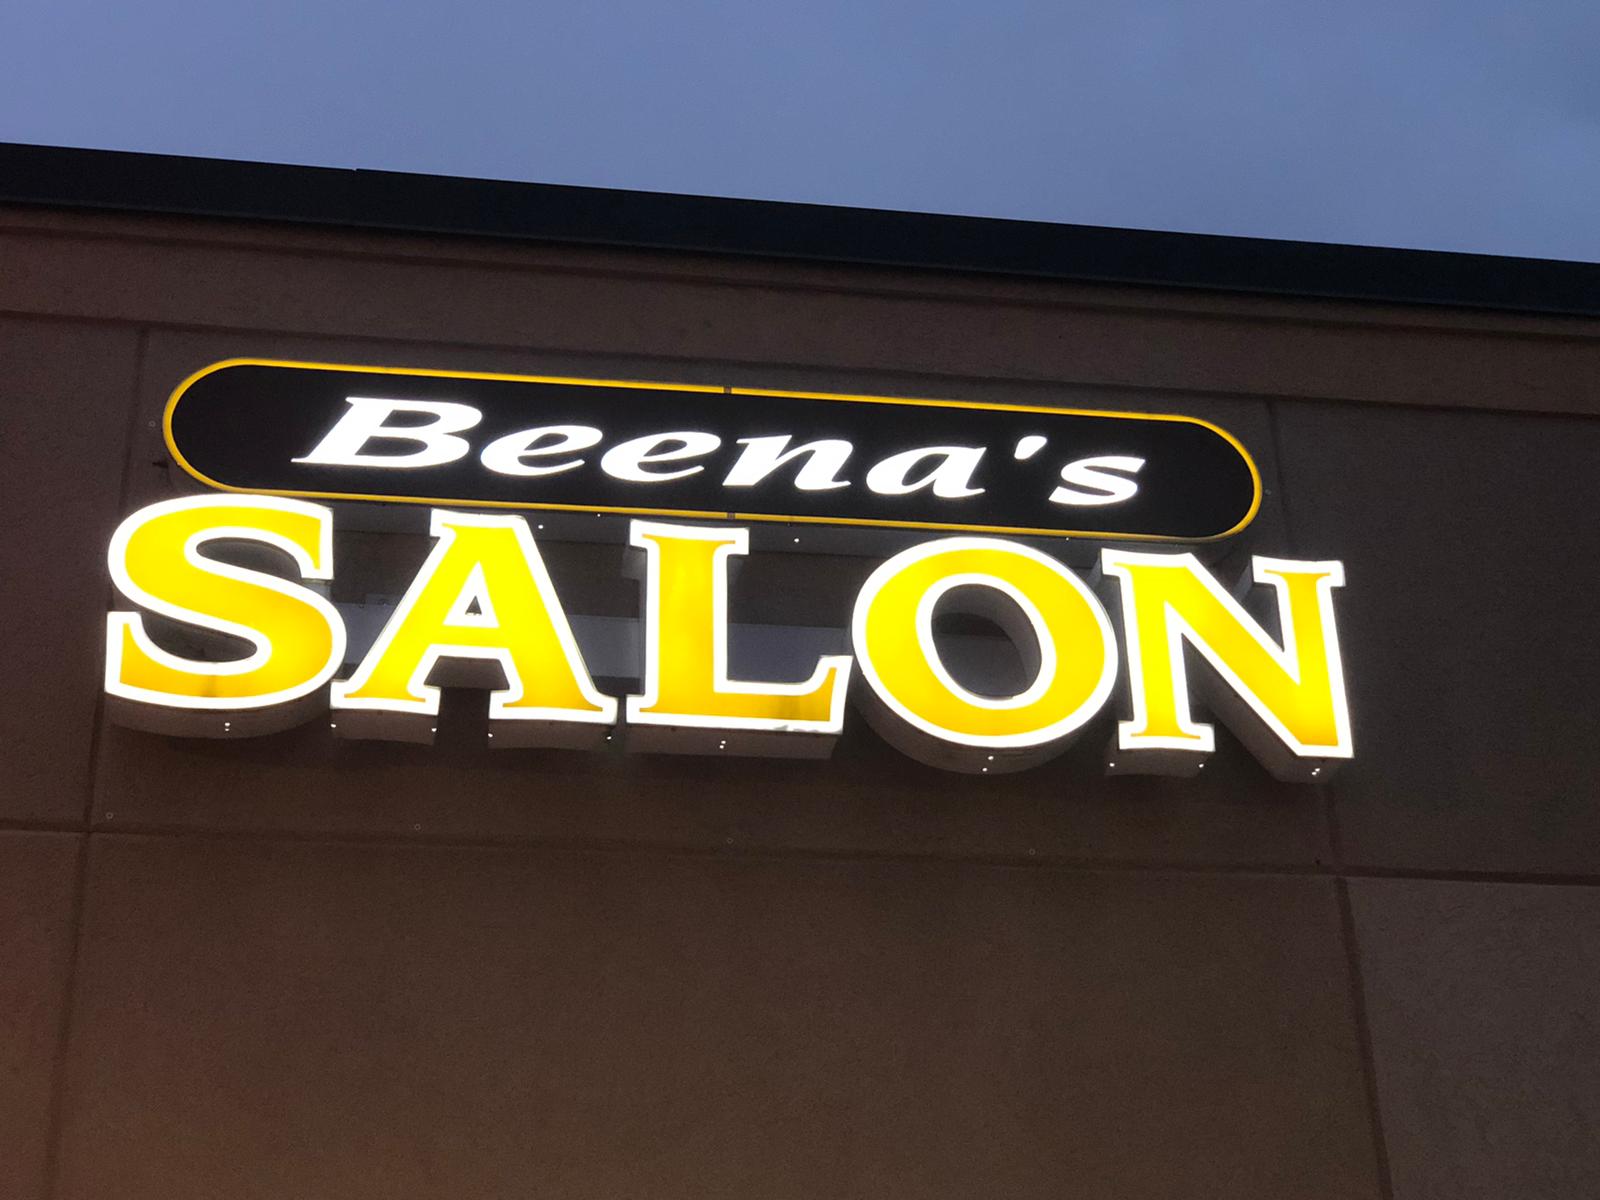 Beena's salon